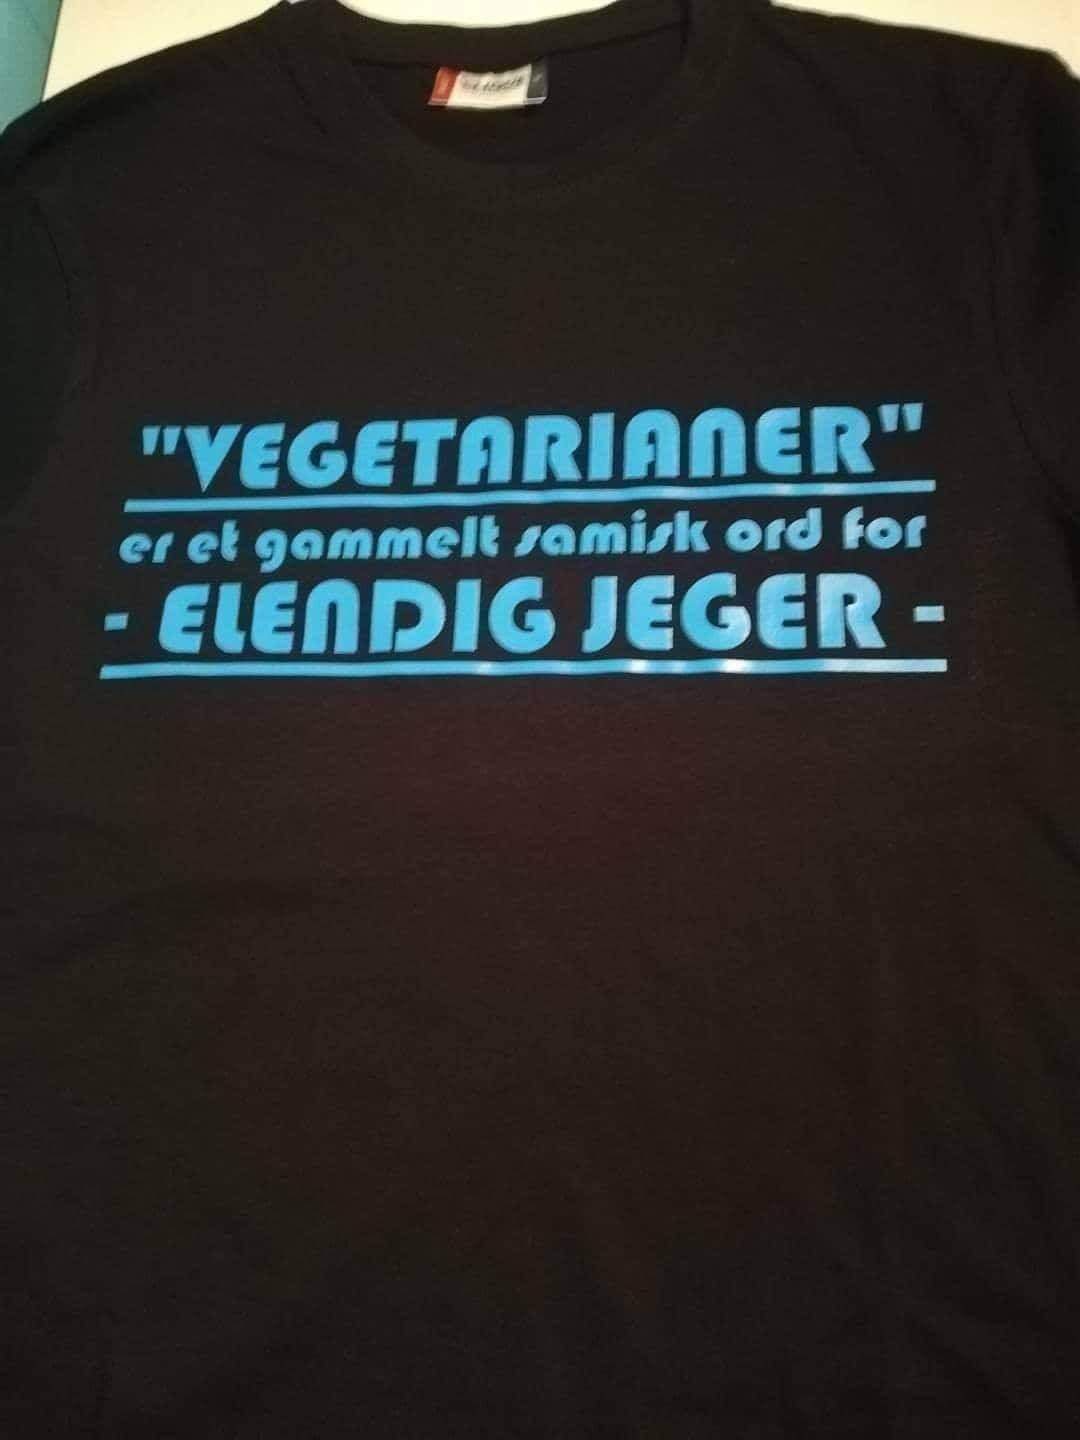 T-skjorte - "Vegetarianer" er et gammelt samisk ord for -elendig jeger-